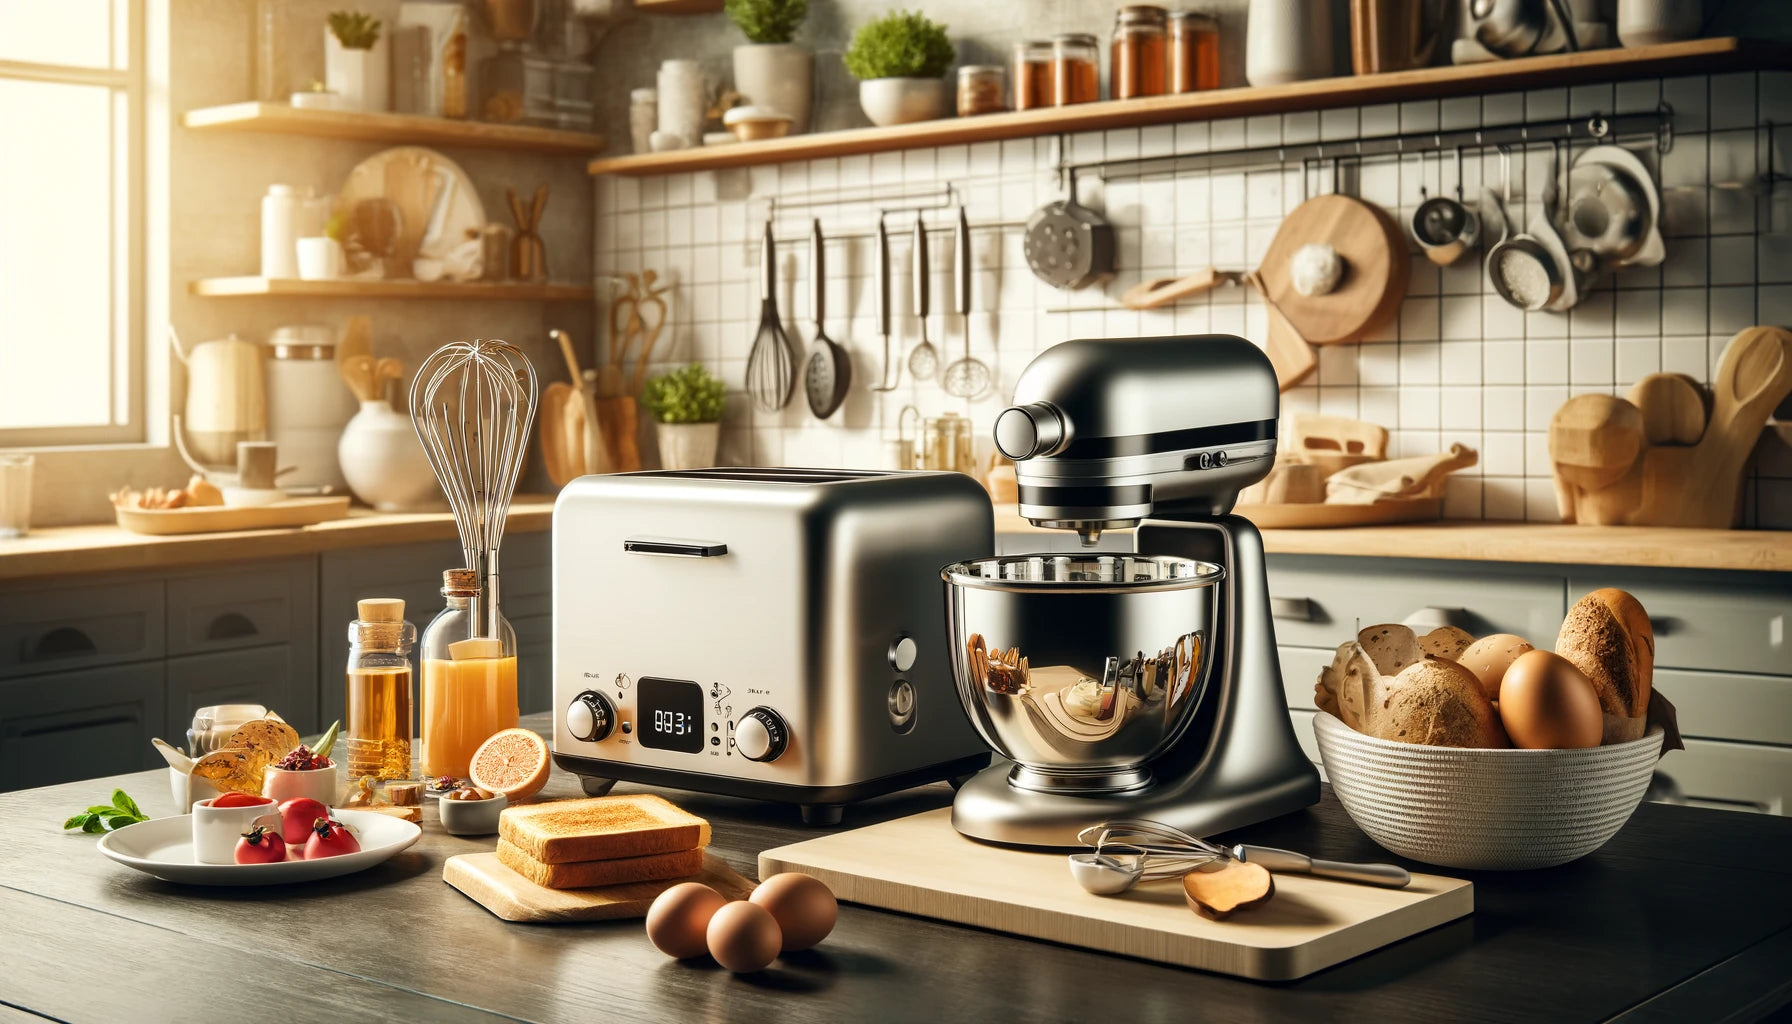 Eine kuratierte Sammlung hochwertiger Küchengeräte, darunter elegante Toaster, leistungsstarke Mixer und andere Gourmet-Küchengeräte. Perfekt, um jede moderne Küche mit Funktionalität und Stil zu bereichern.